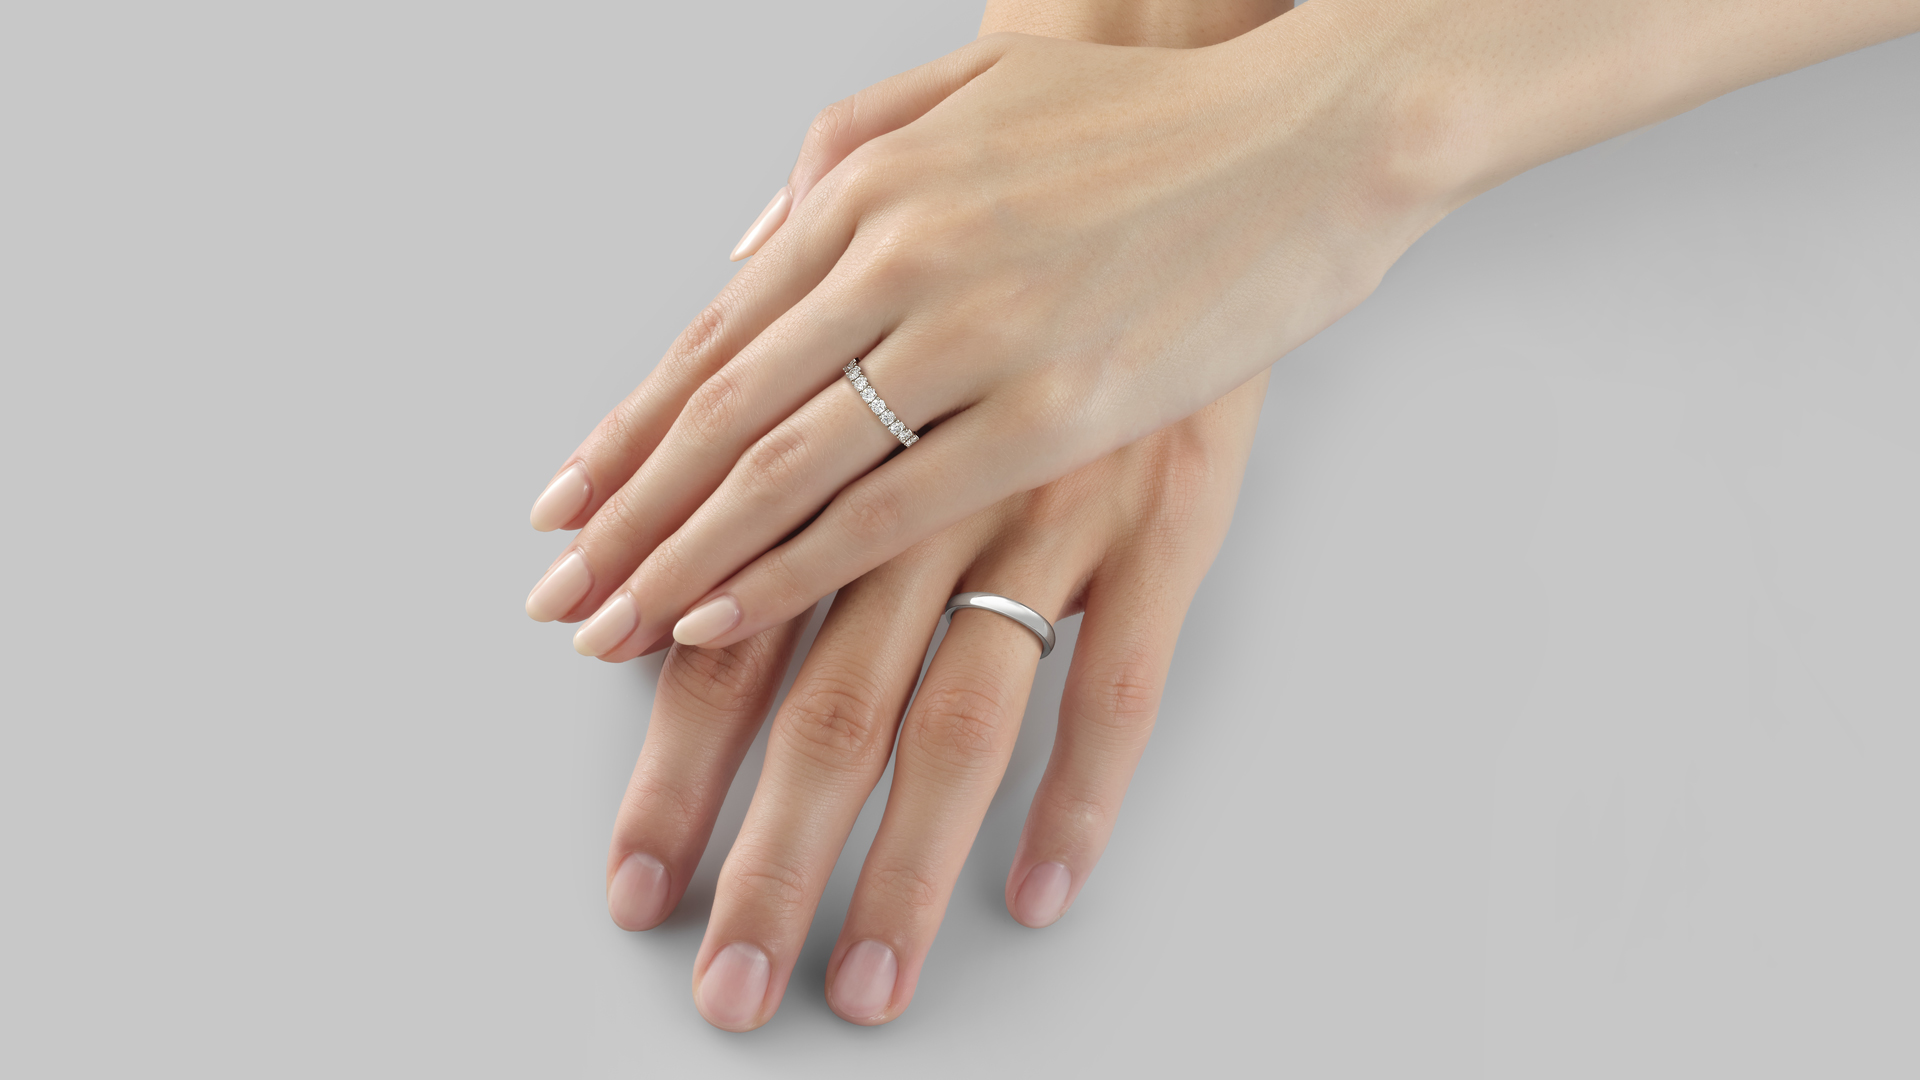 felicitas×selene フェリキタス(左)×セレーネ(右)_2_結婚指輪